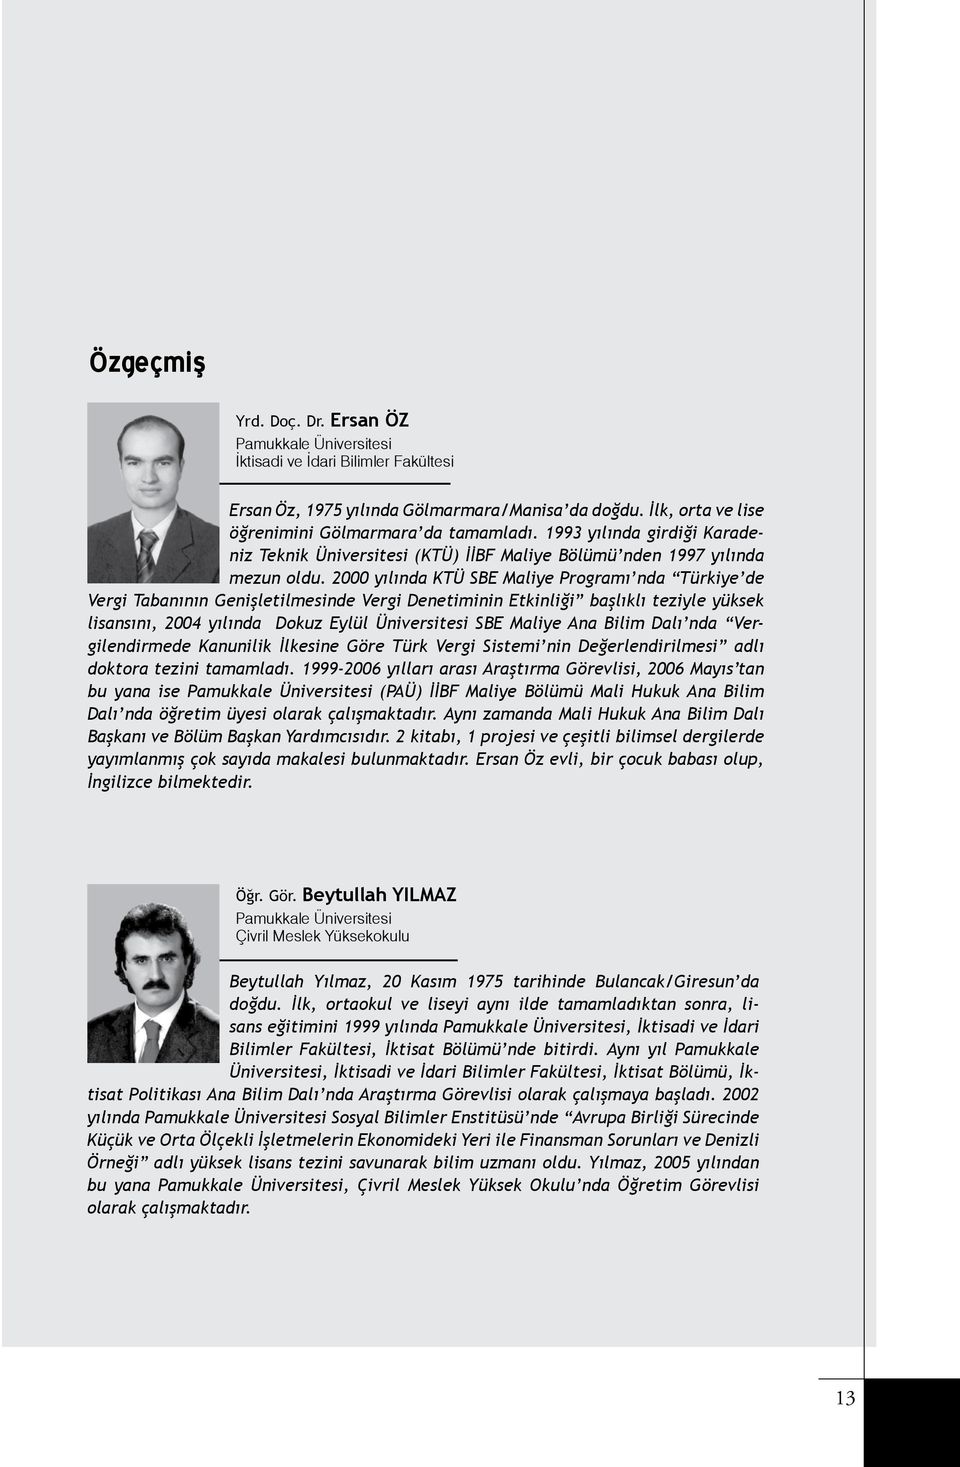 2000 yılında KTÜ SBE Maliye Programı nda Türkiye de Vergi Tabanının Genişletilmesinde Vergi Denetiminin Etkinliği başlıklı teziyle yüksek lisansını, 2004 yılında Dokuz Eylül Üniversitesi SBE Maliye